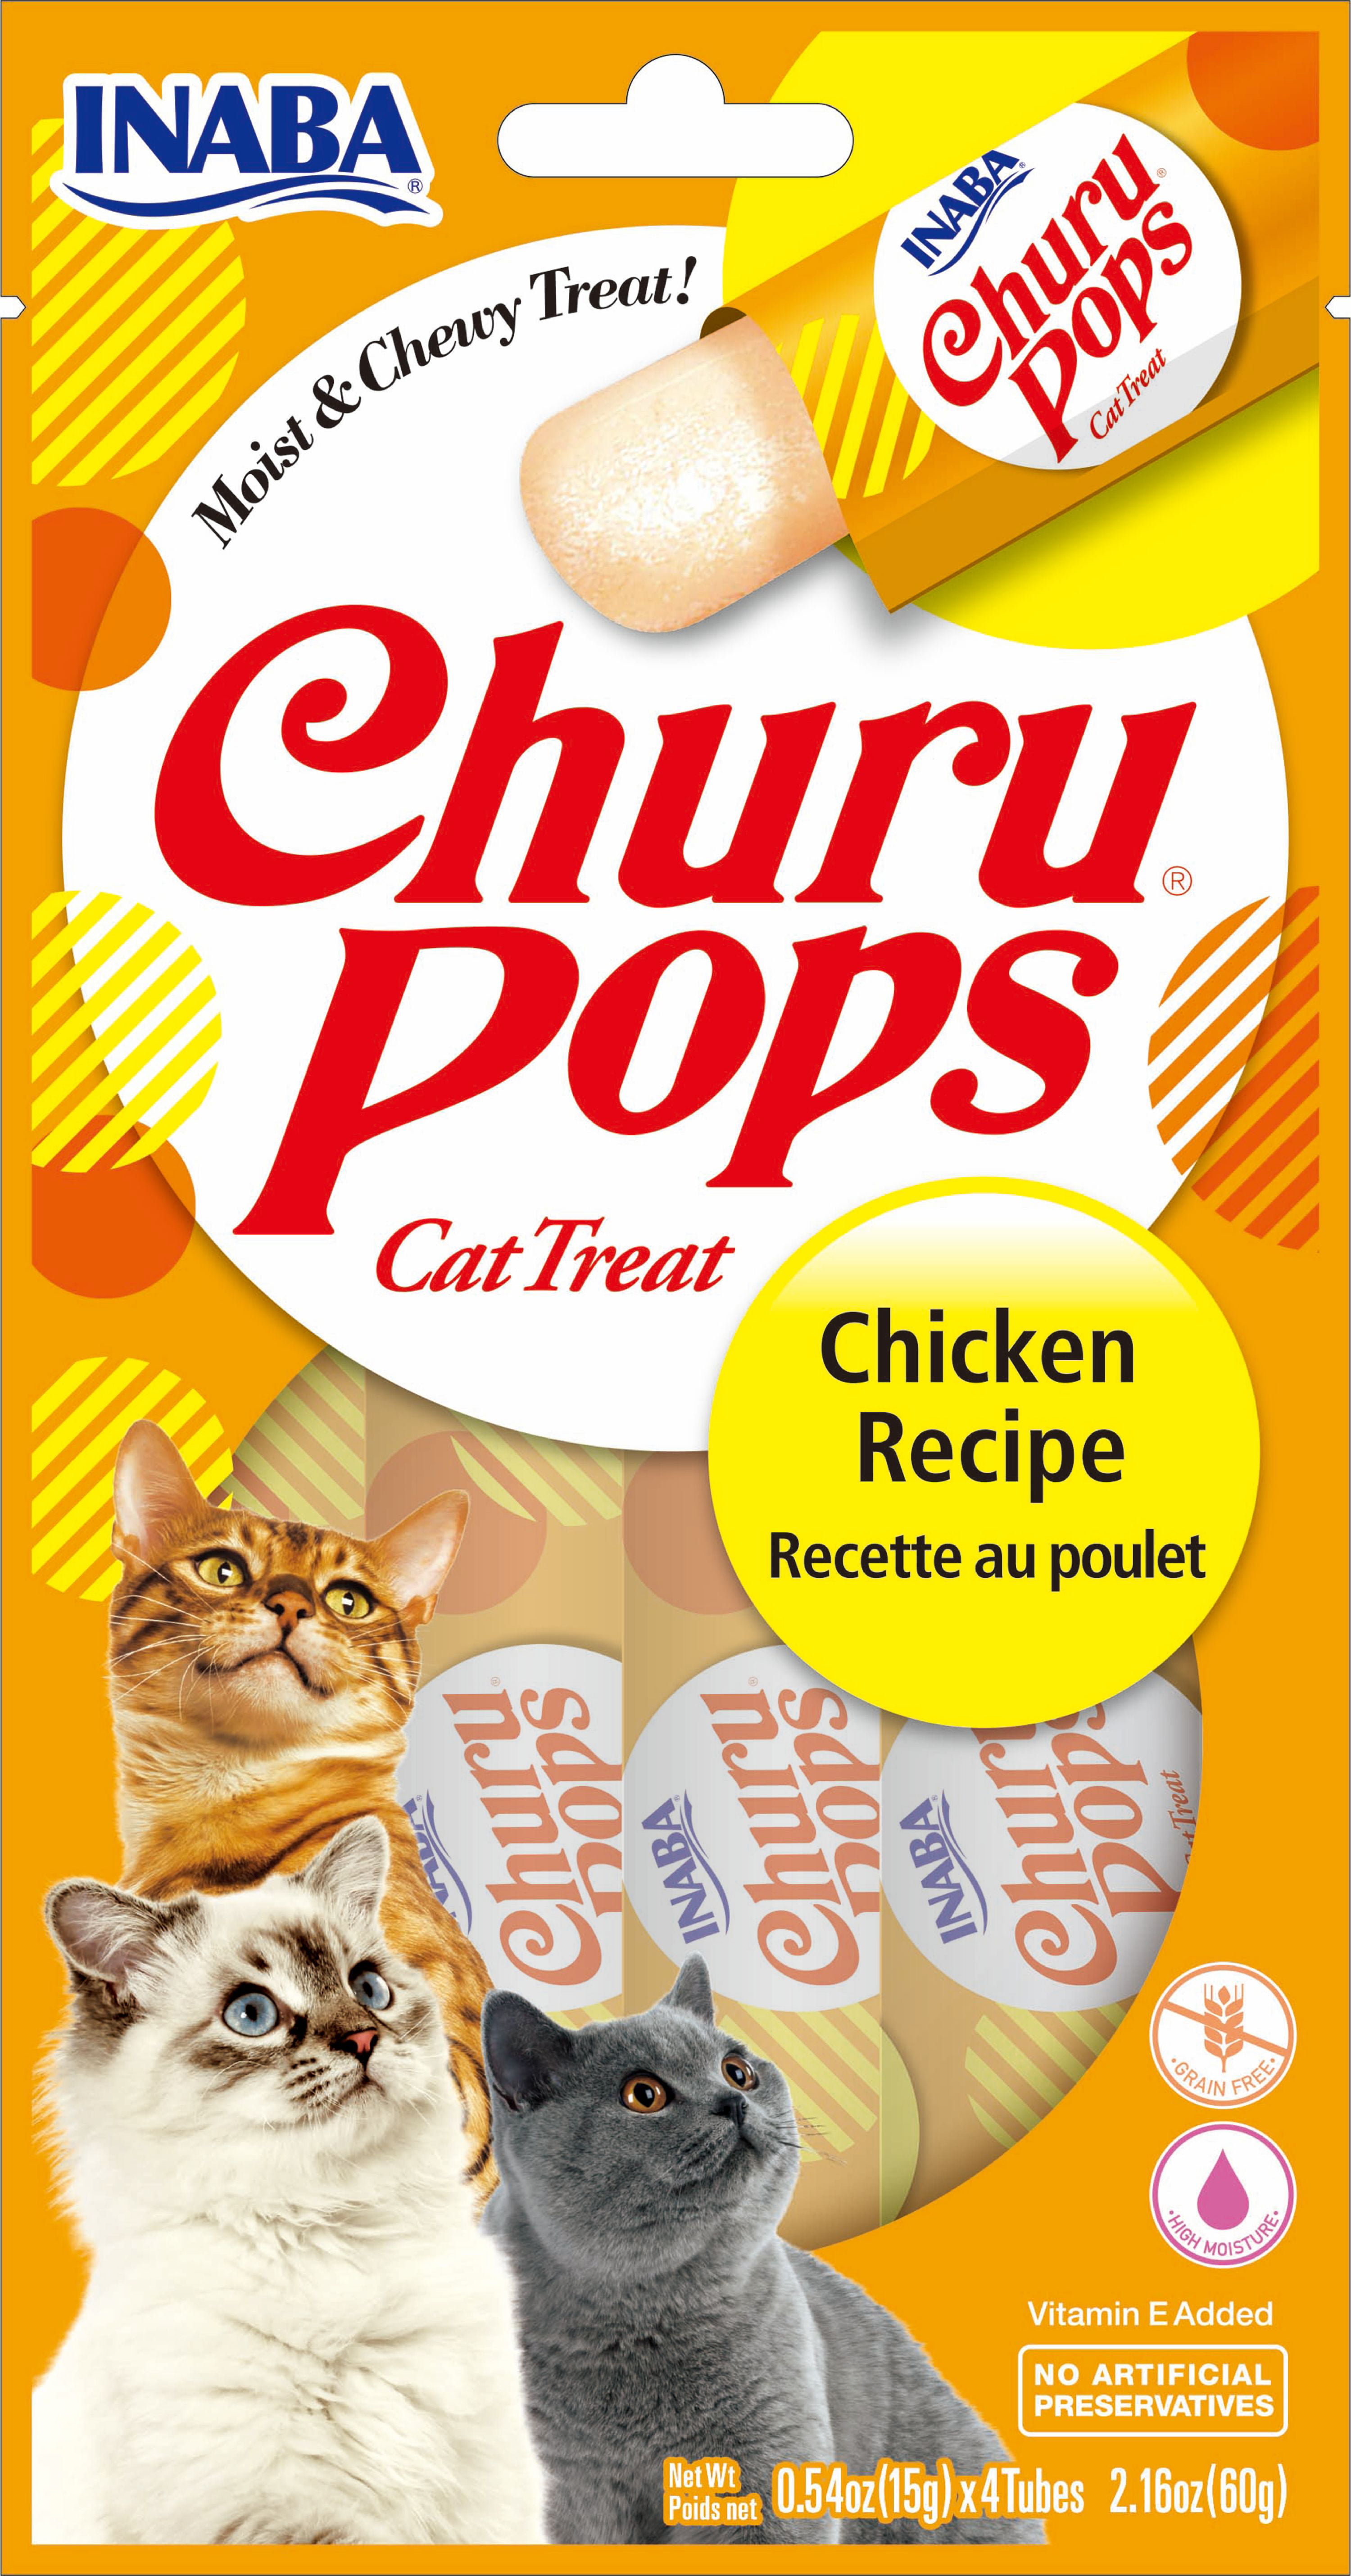 inaba churu cat treats review